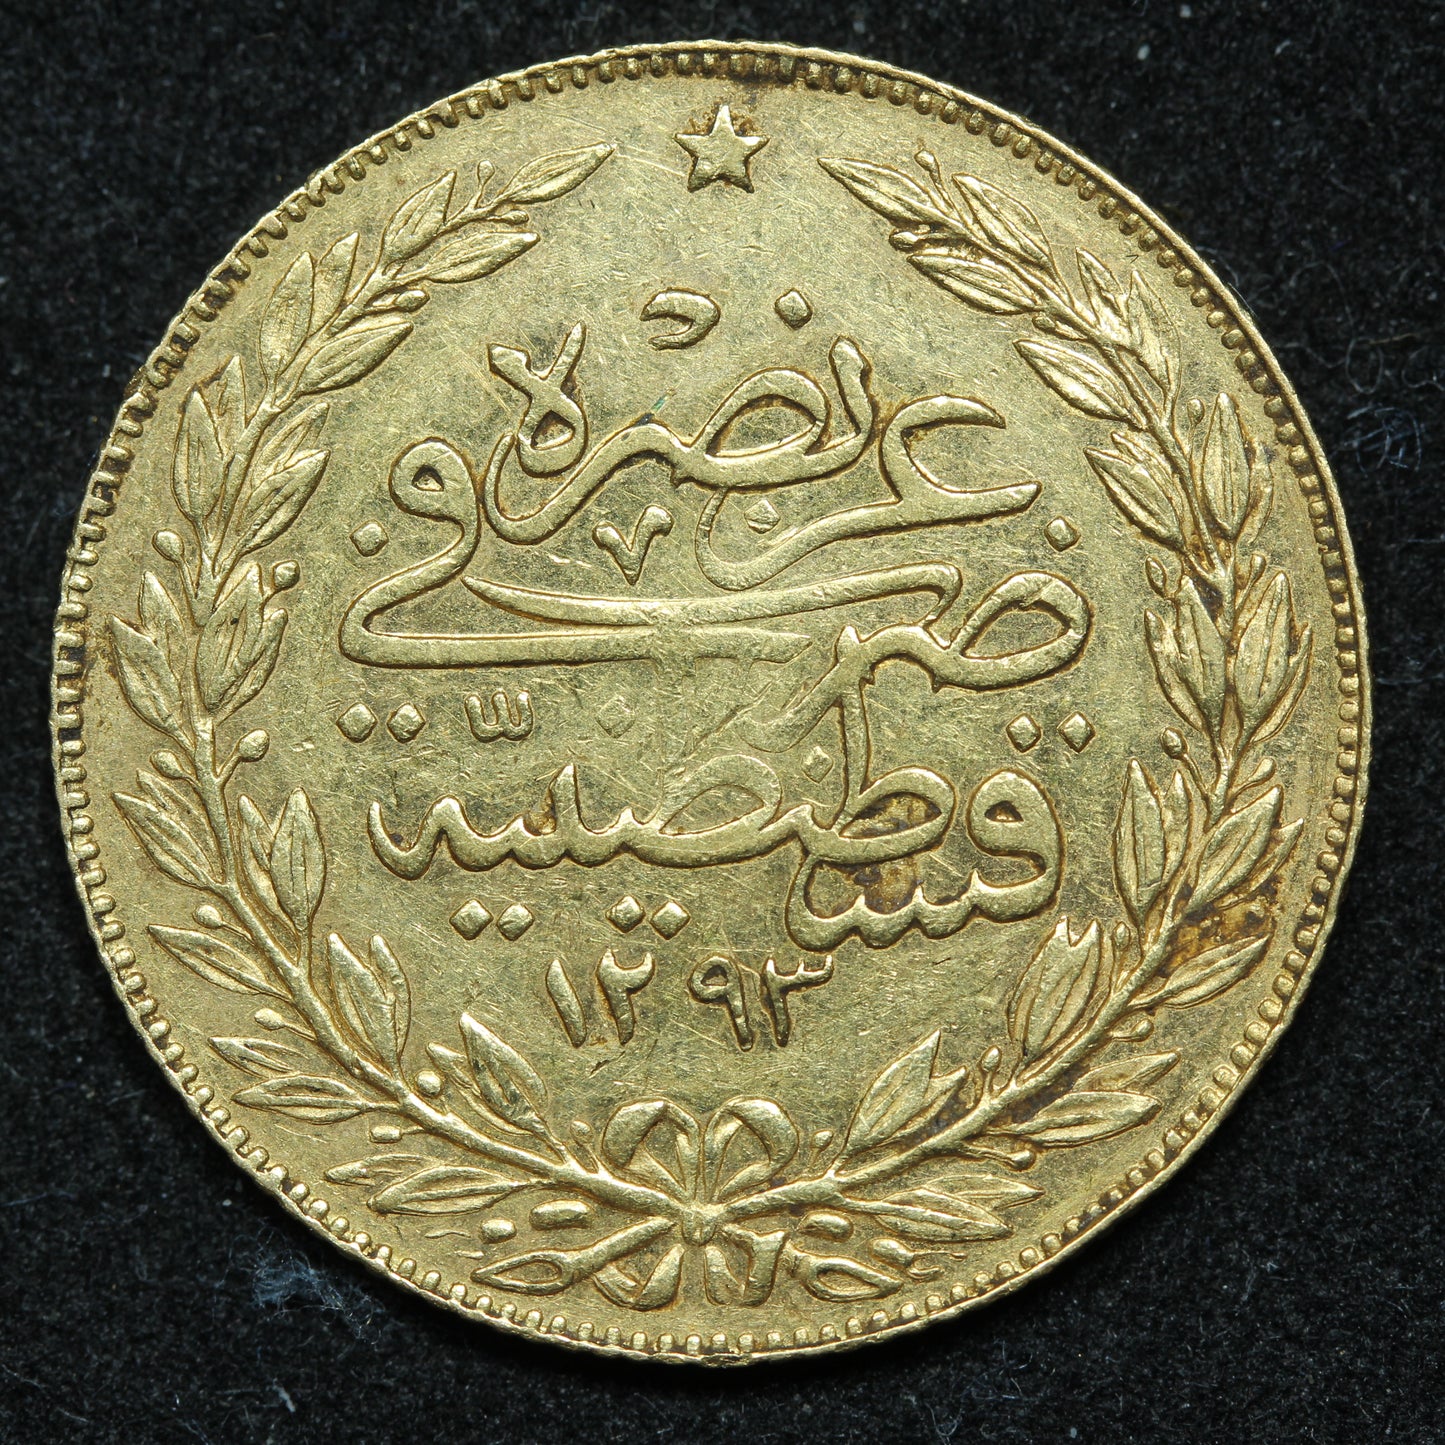 Turkey 100 Kurush 1293/32 AH (1876) Gold Coin